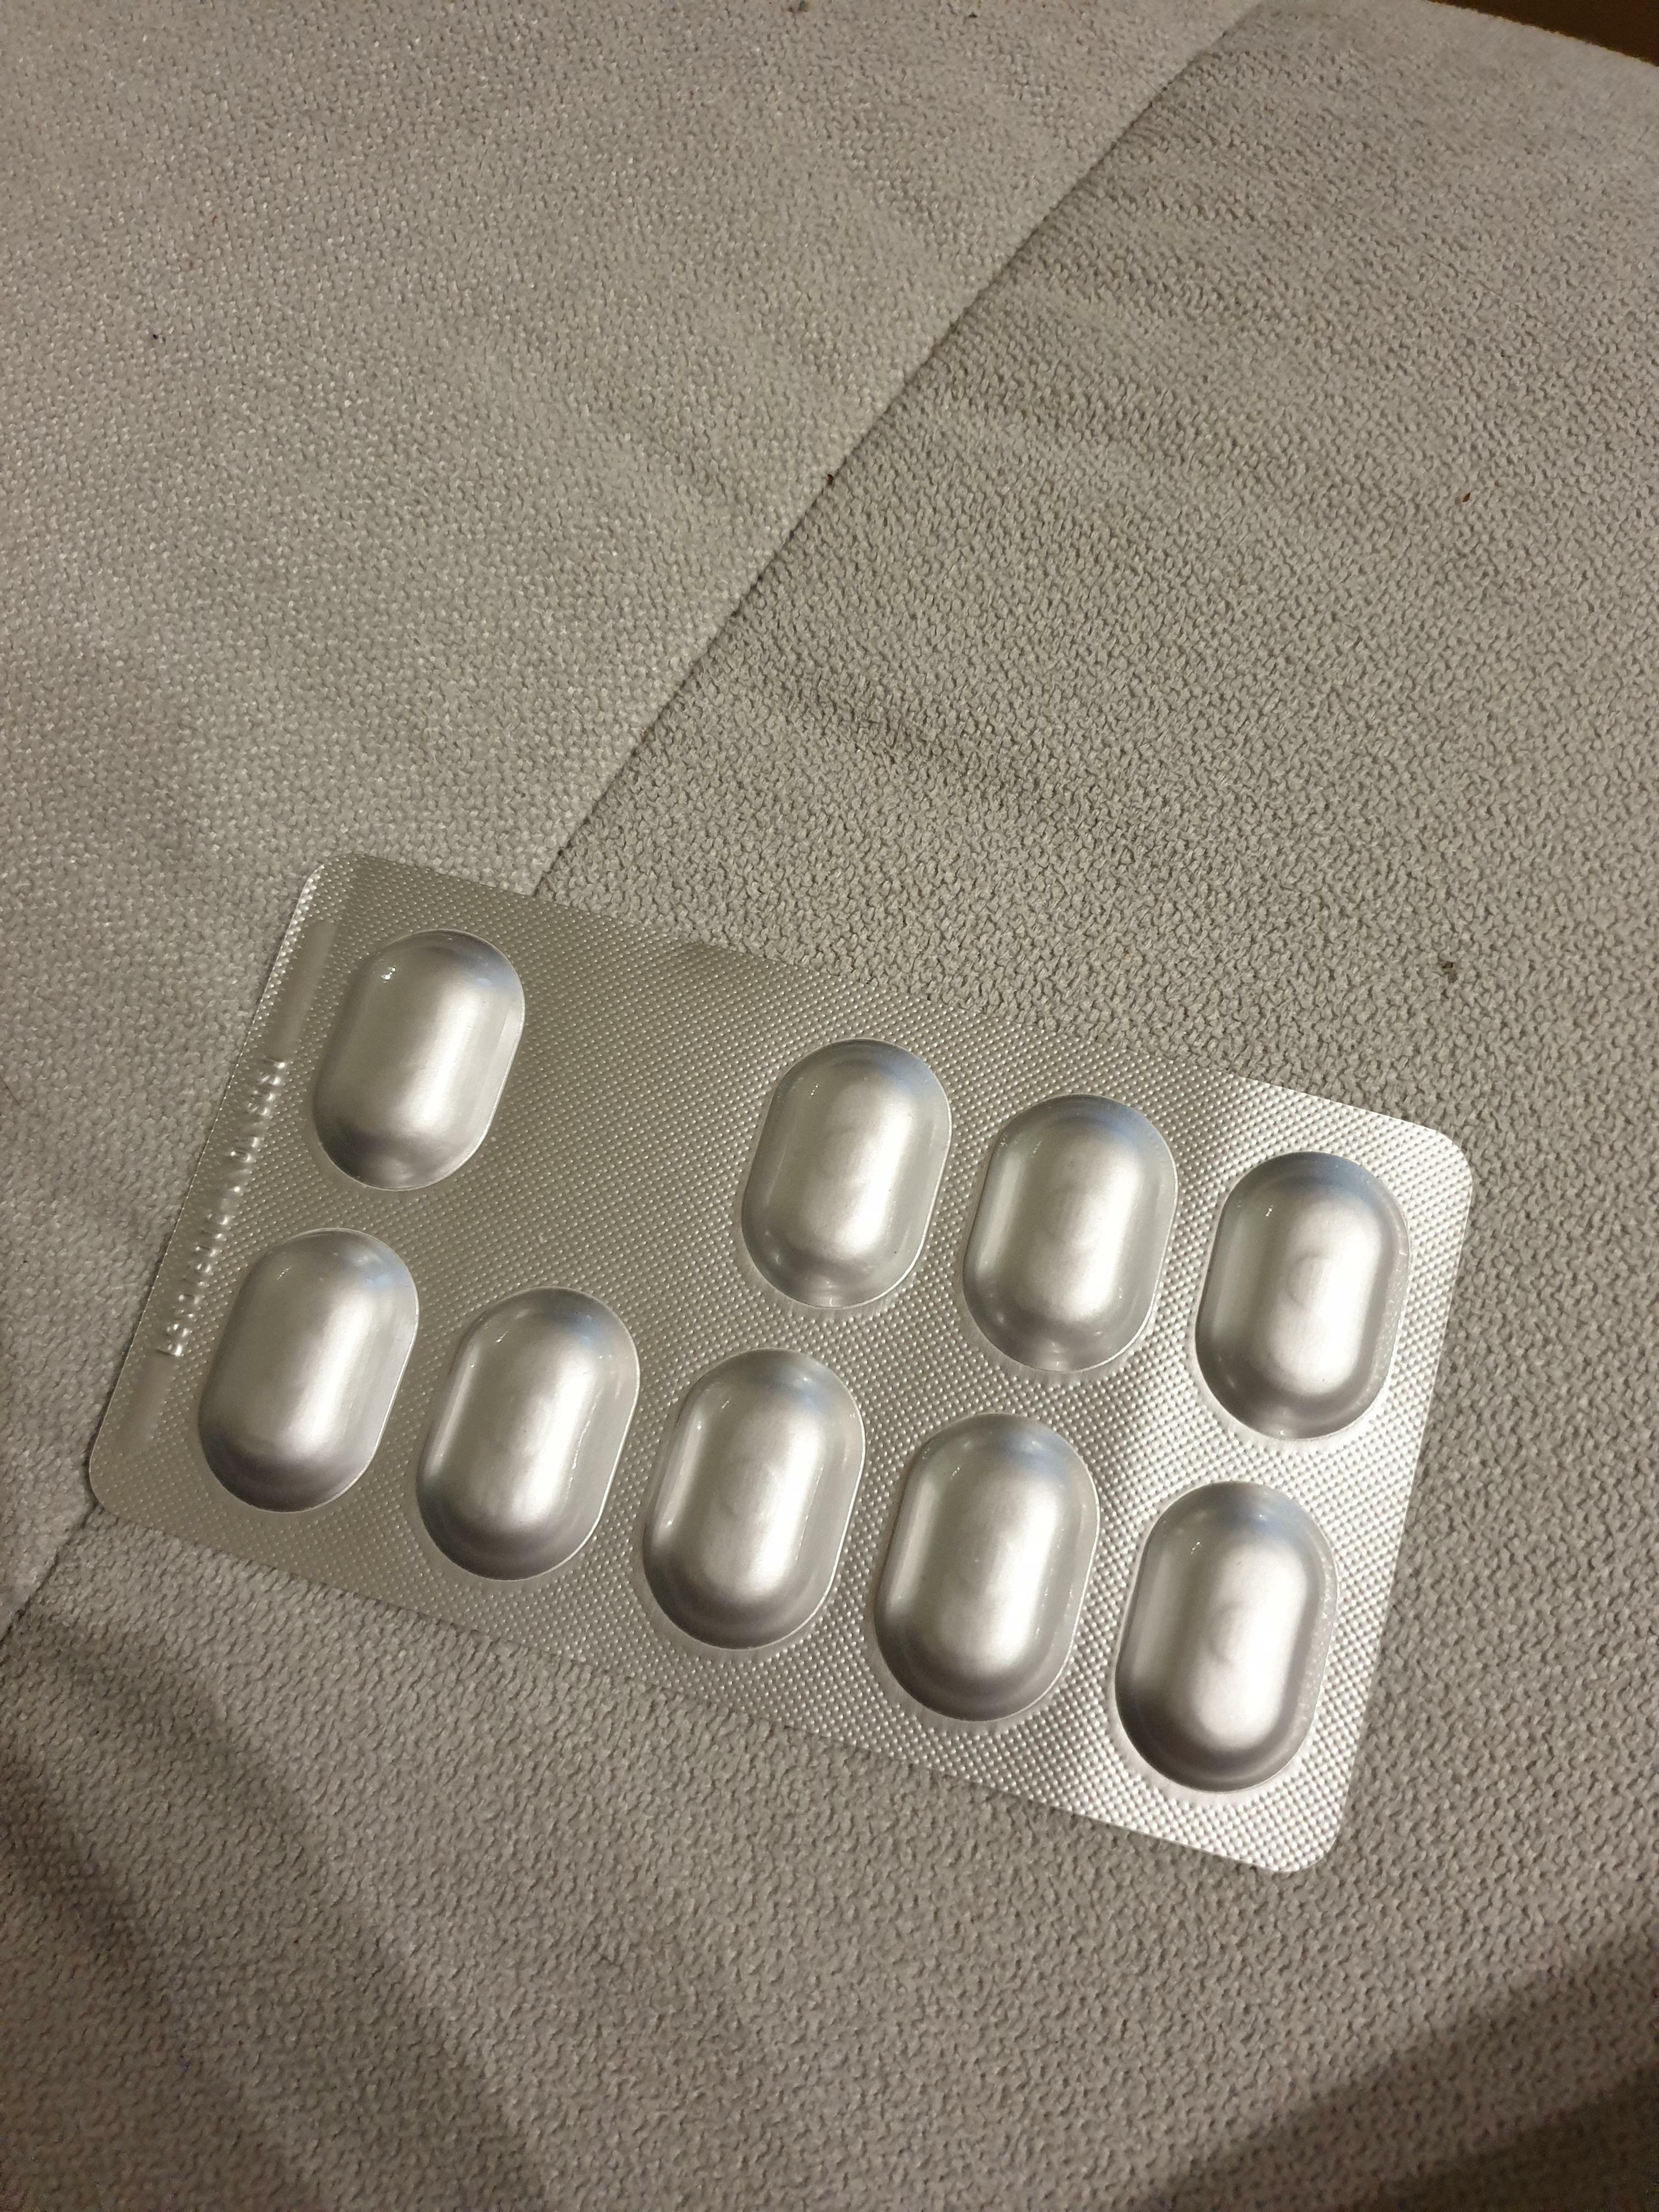 les antibiotiques que je dois prendre